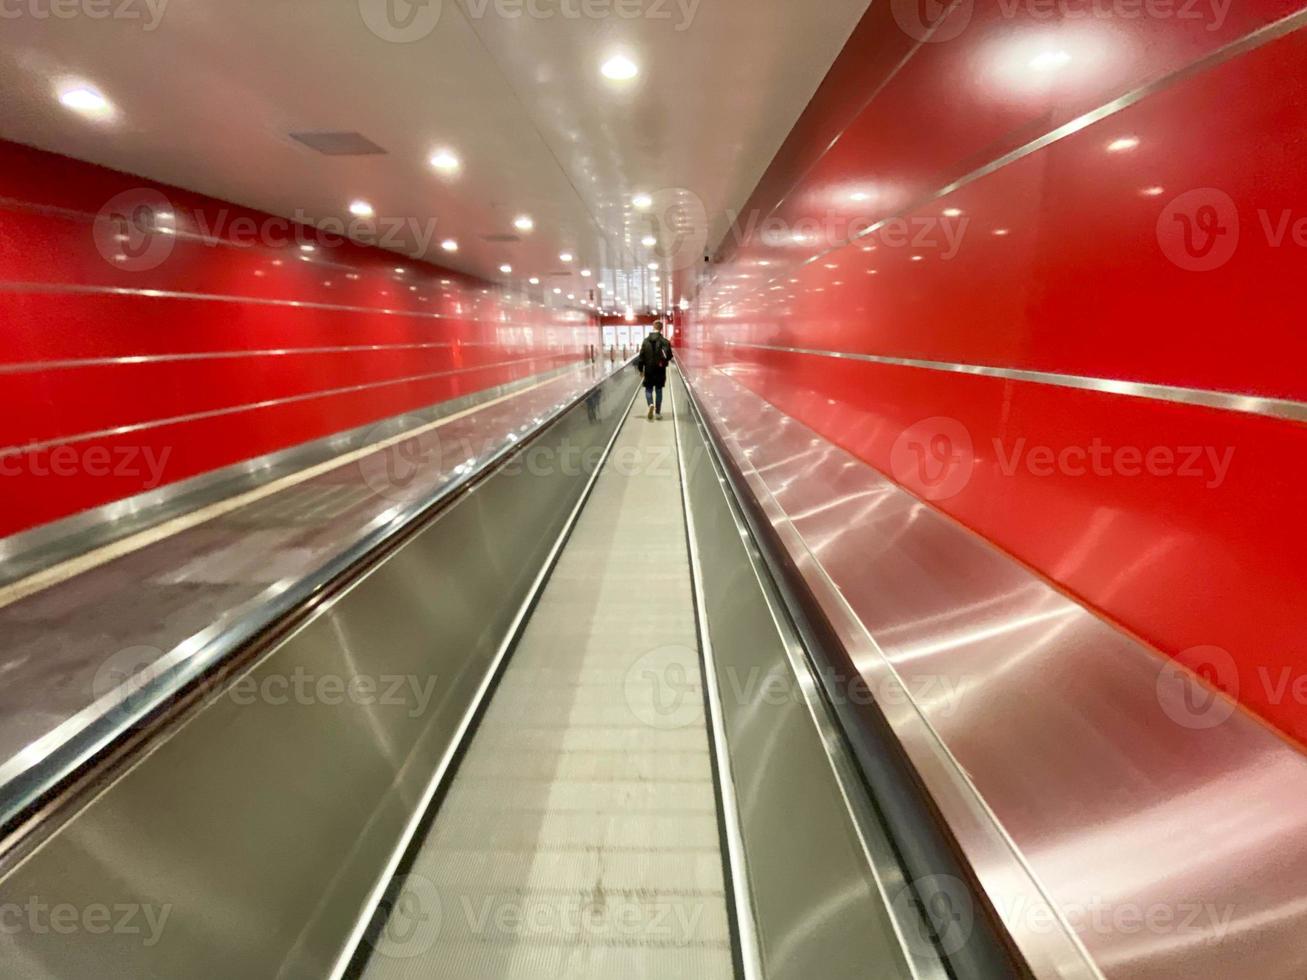 groot rood modern lang helder ondergronds loopbrug tussen metro stations met reizen wandelaars en roltrappen voor snel passage van passagiers foto